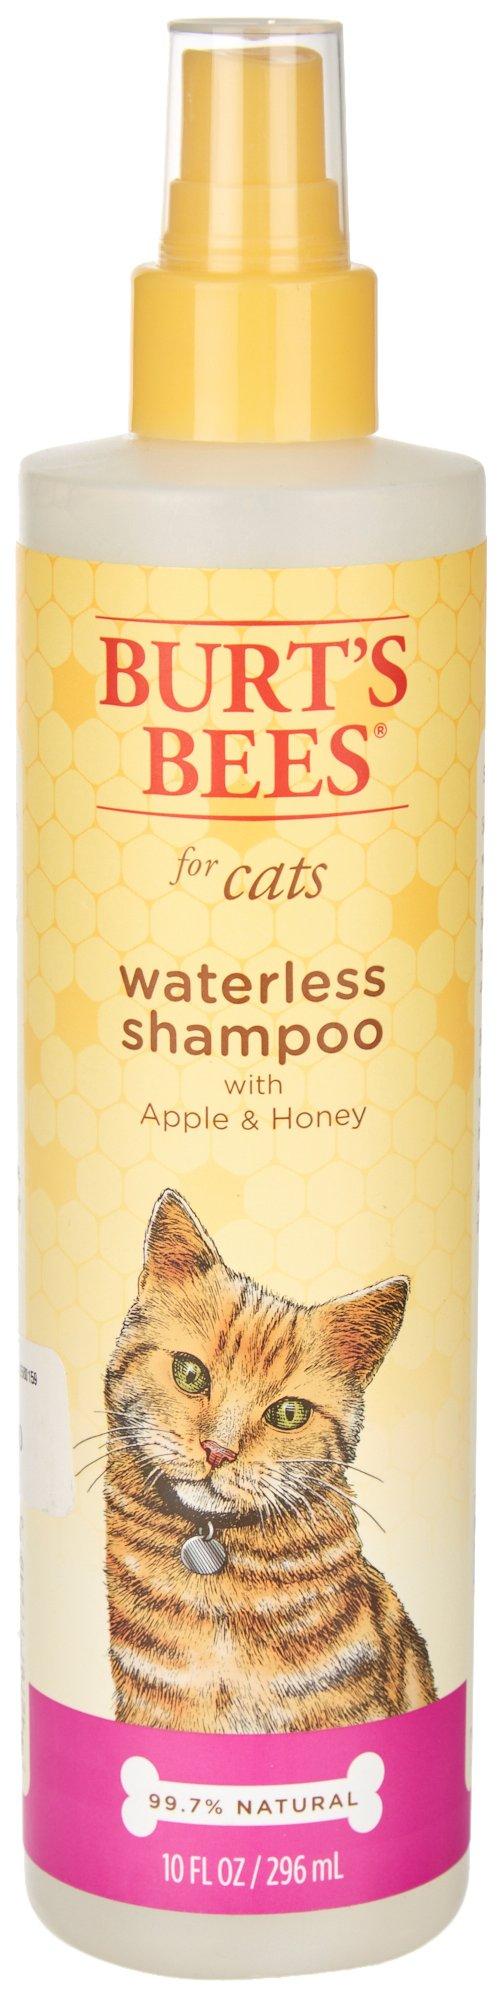 Burt's Bees Apple & Honey Waterless Shampoo For